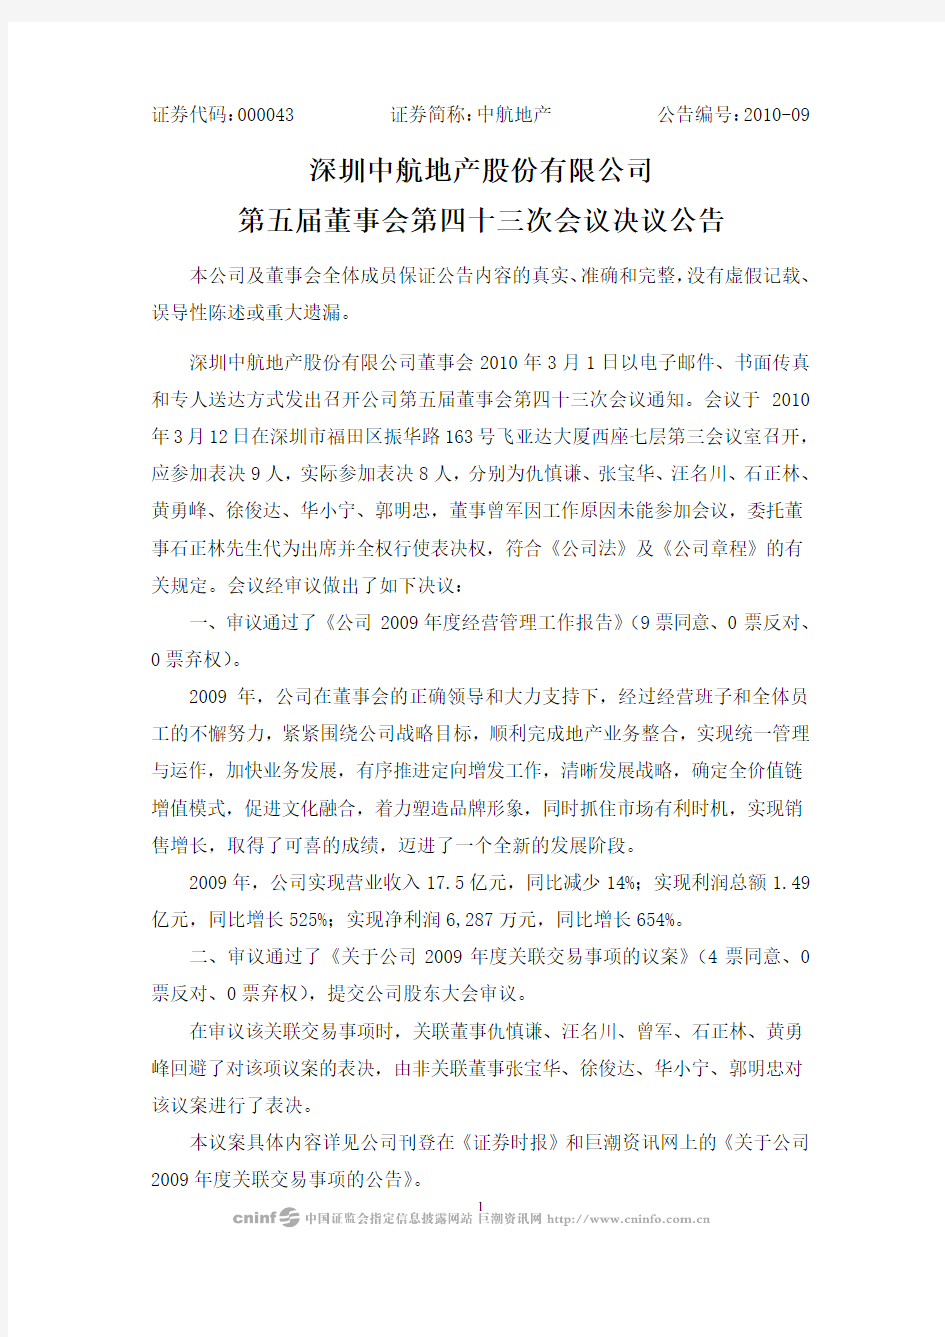 深圳中航地产股份有限公司第五届董事会第四十三次会议决议公告